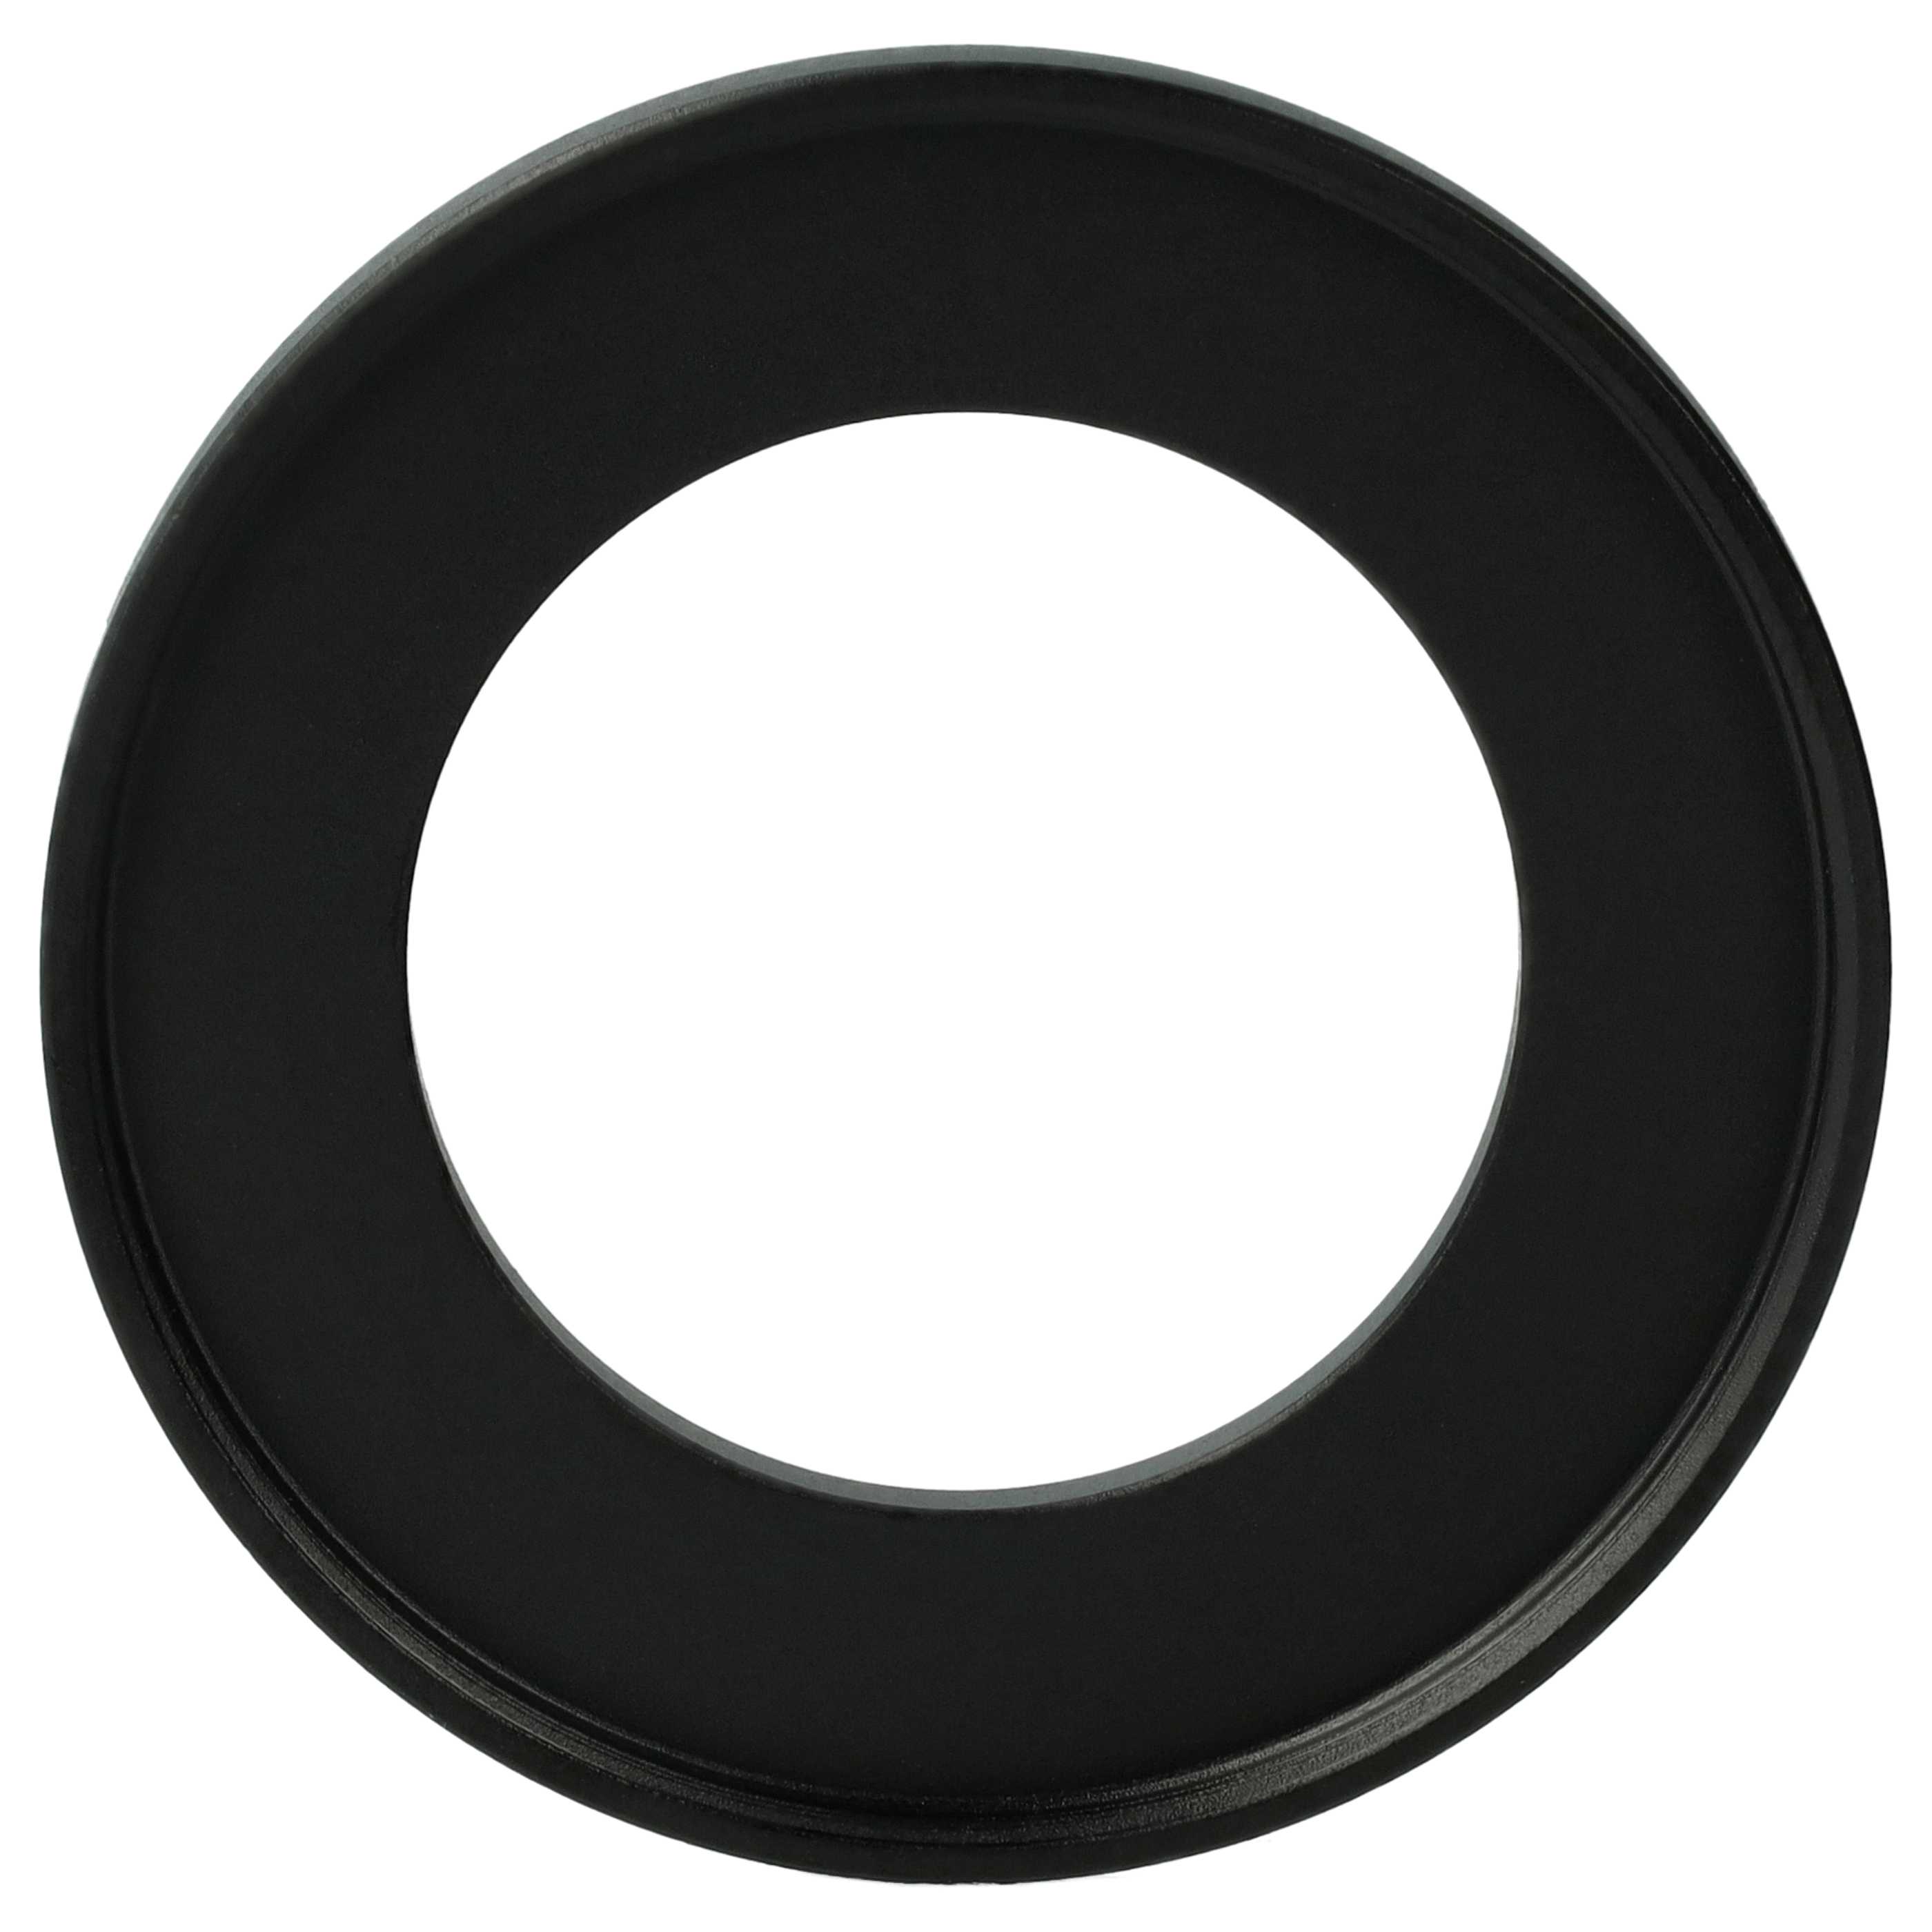 Step-Up-Ring Adapter 34 mm auf 49 mm passend für diverse Kamera-Objektive - Filteradapter